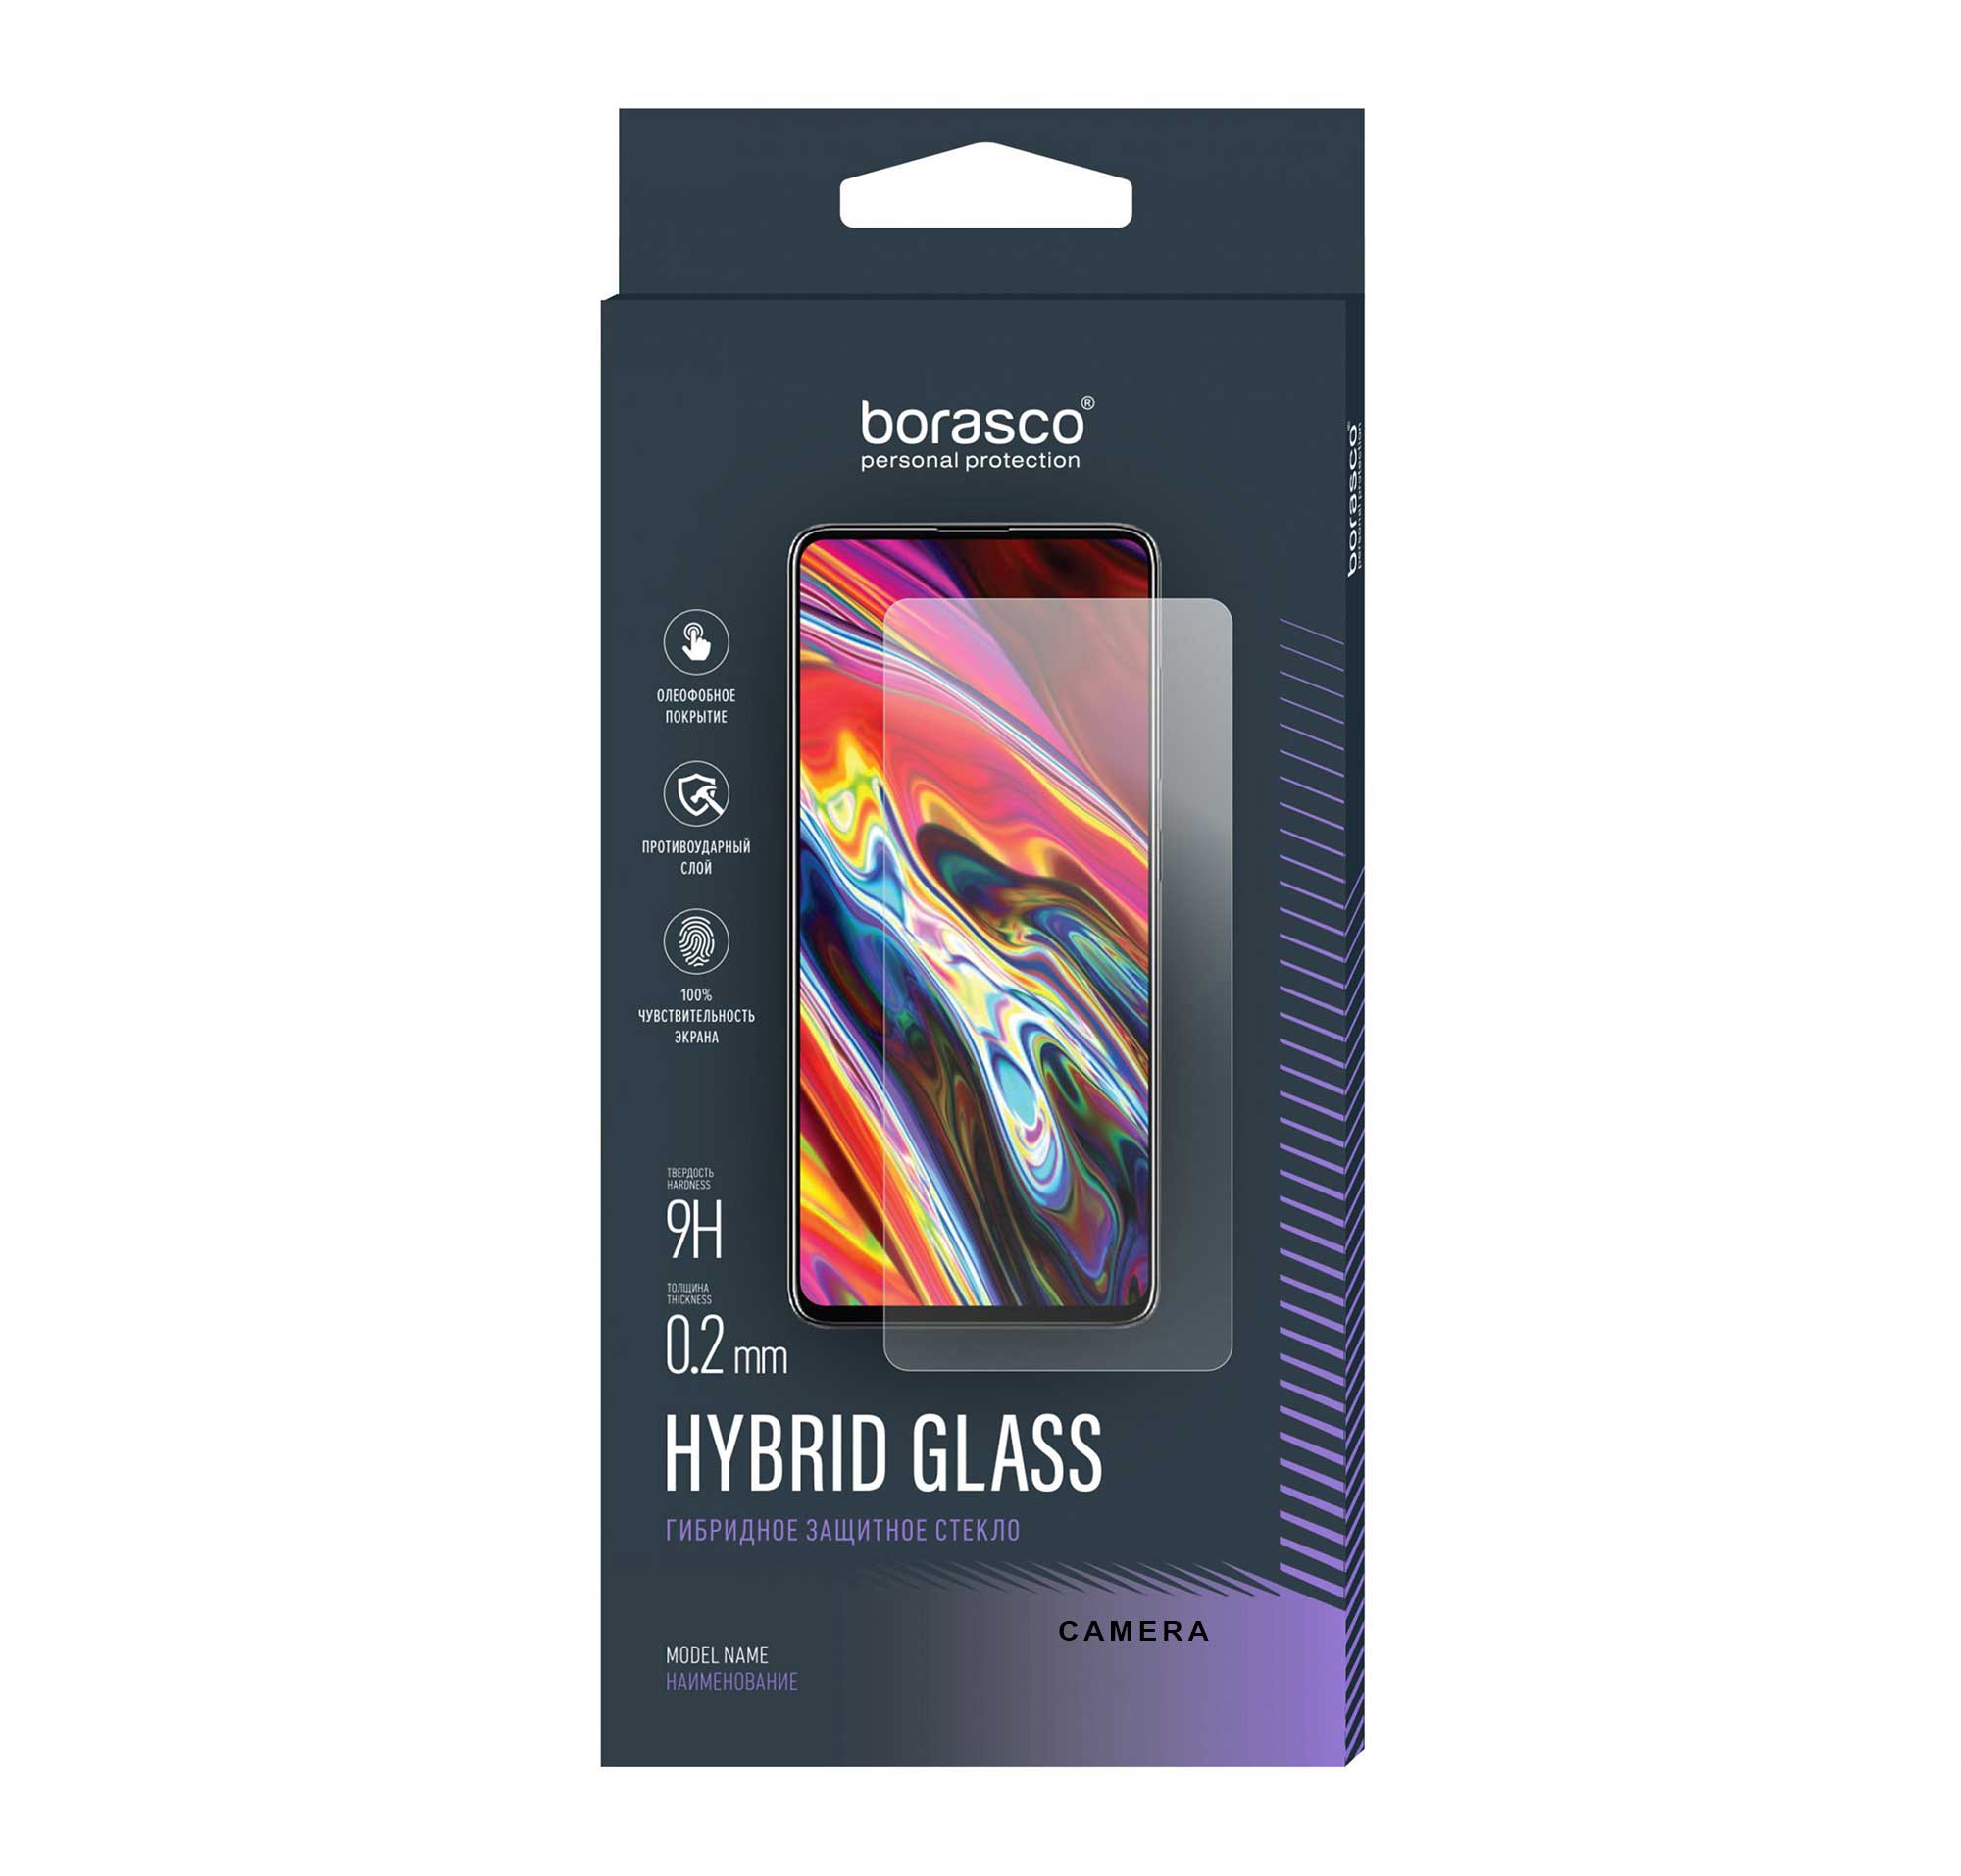 Защитное стекло (Экран+Камера) BoraSCO Hybrid Glass для OSCAL C20 стекло защитное borasco hybrid glass realme c20 с21 c21y с11 2021 c25 c25s прозрачное